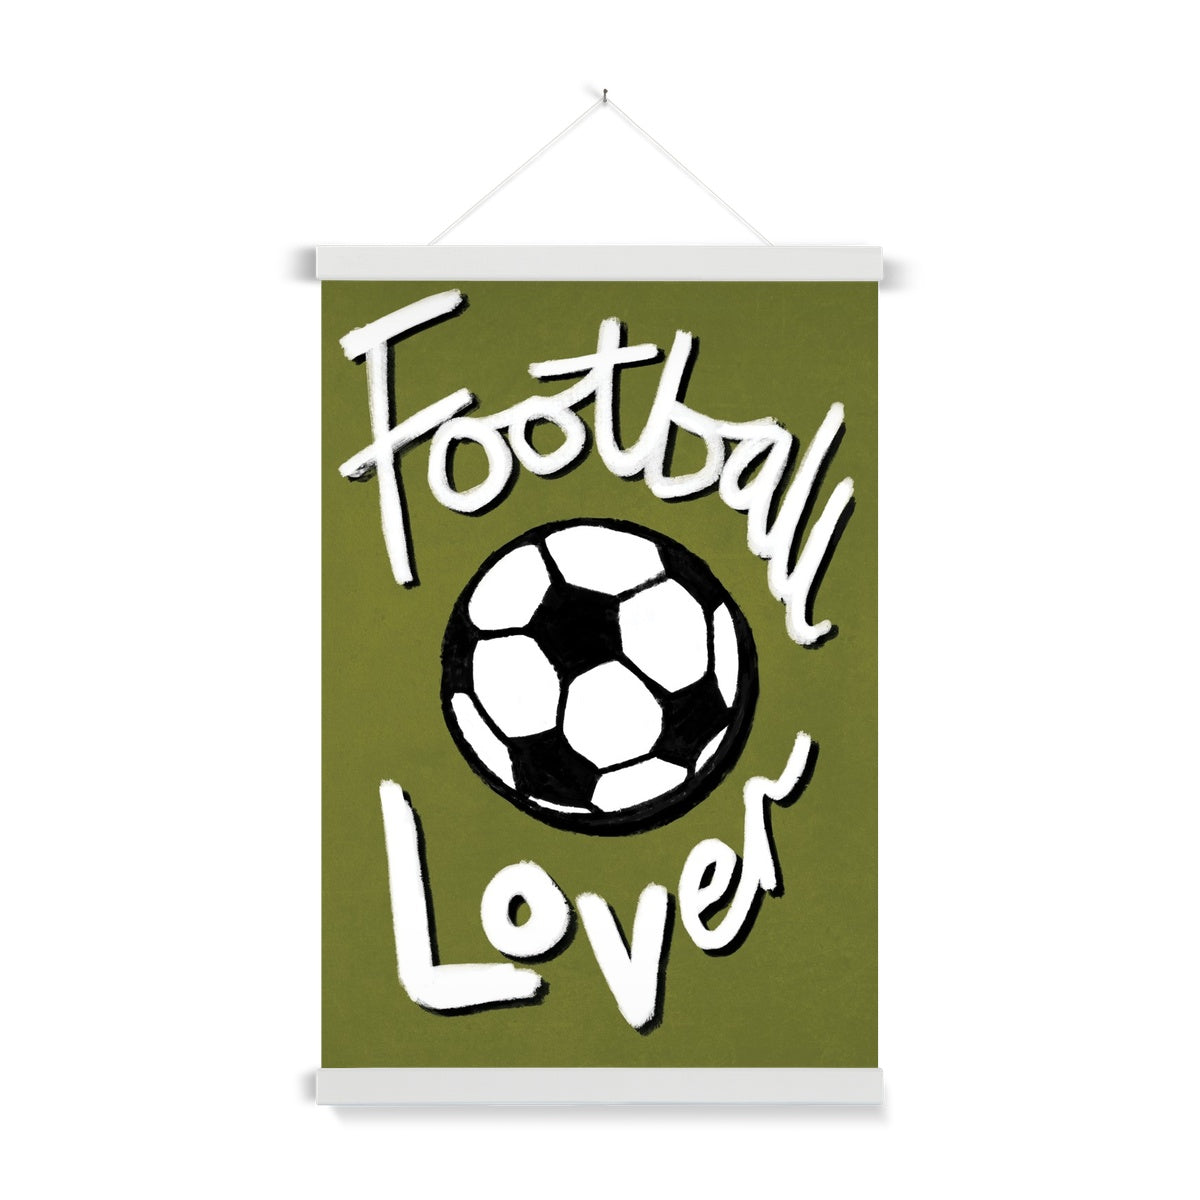 Football Lover Print - Olive Green, Black, White Fine Art Print with Hanger